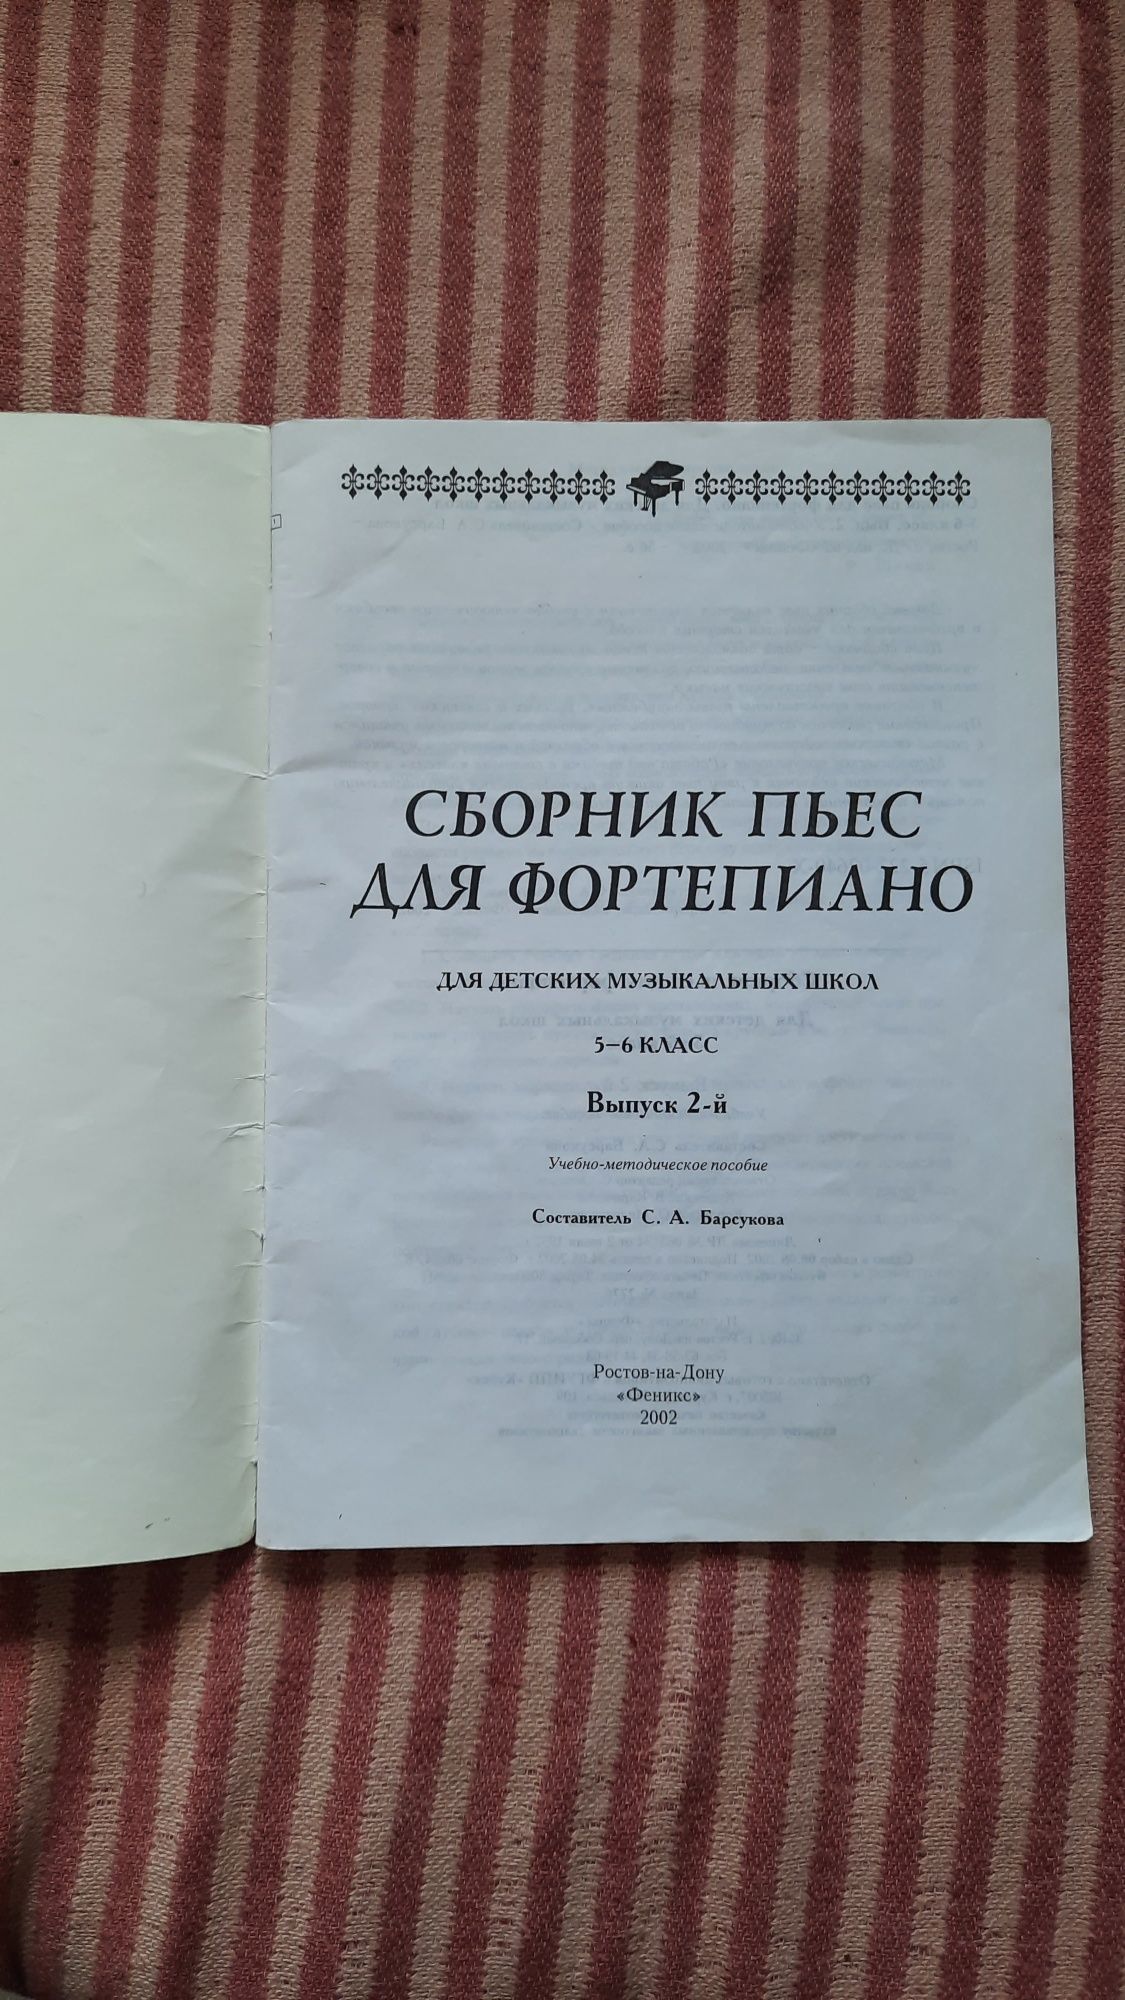 Сборник пьес для фортепиано 5-6 класс